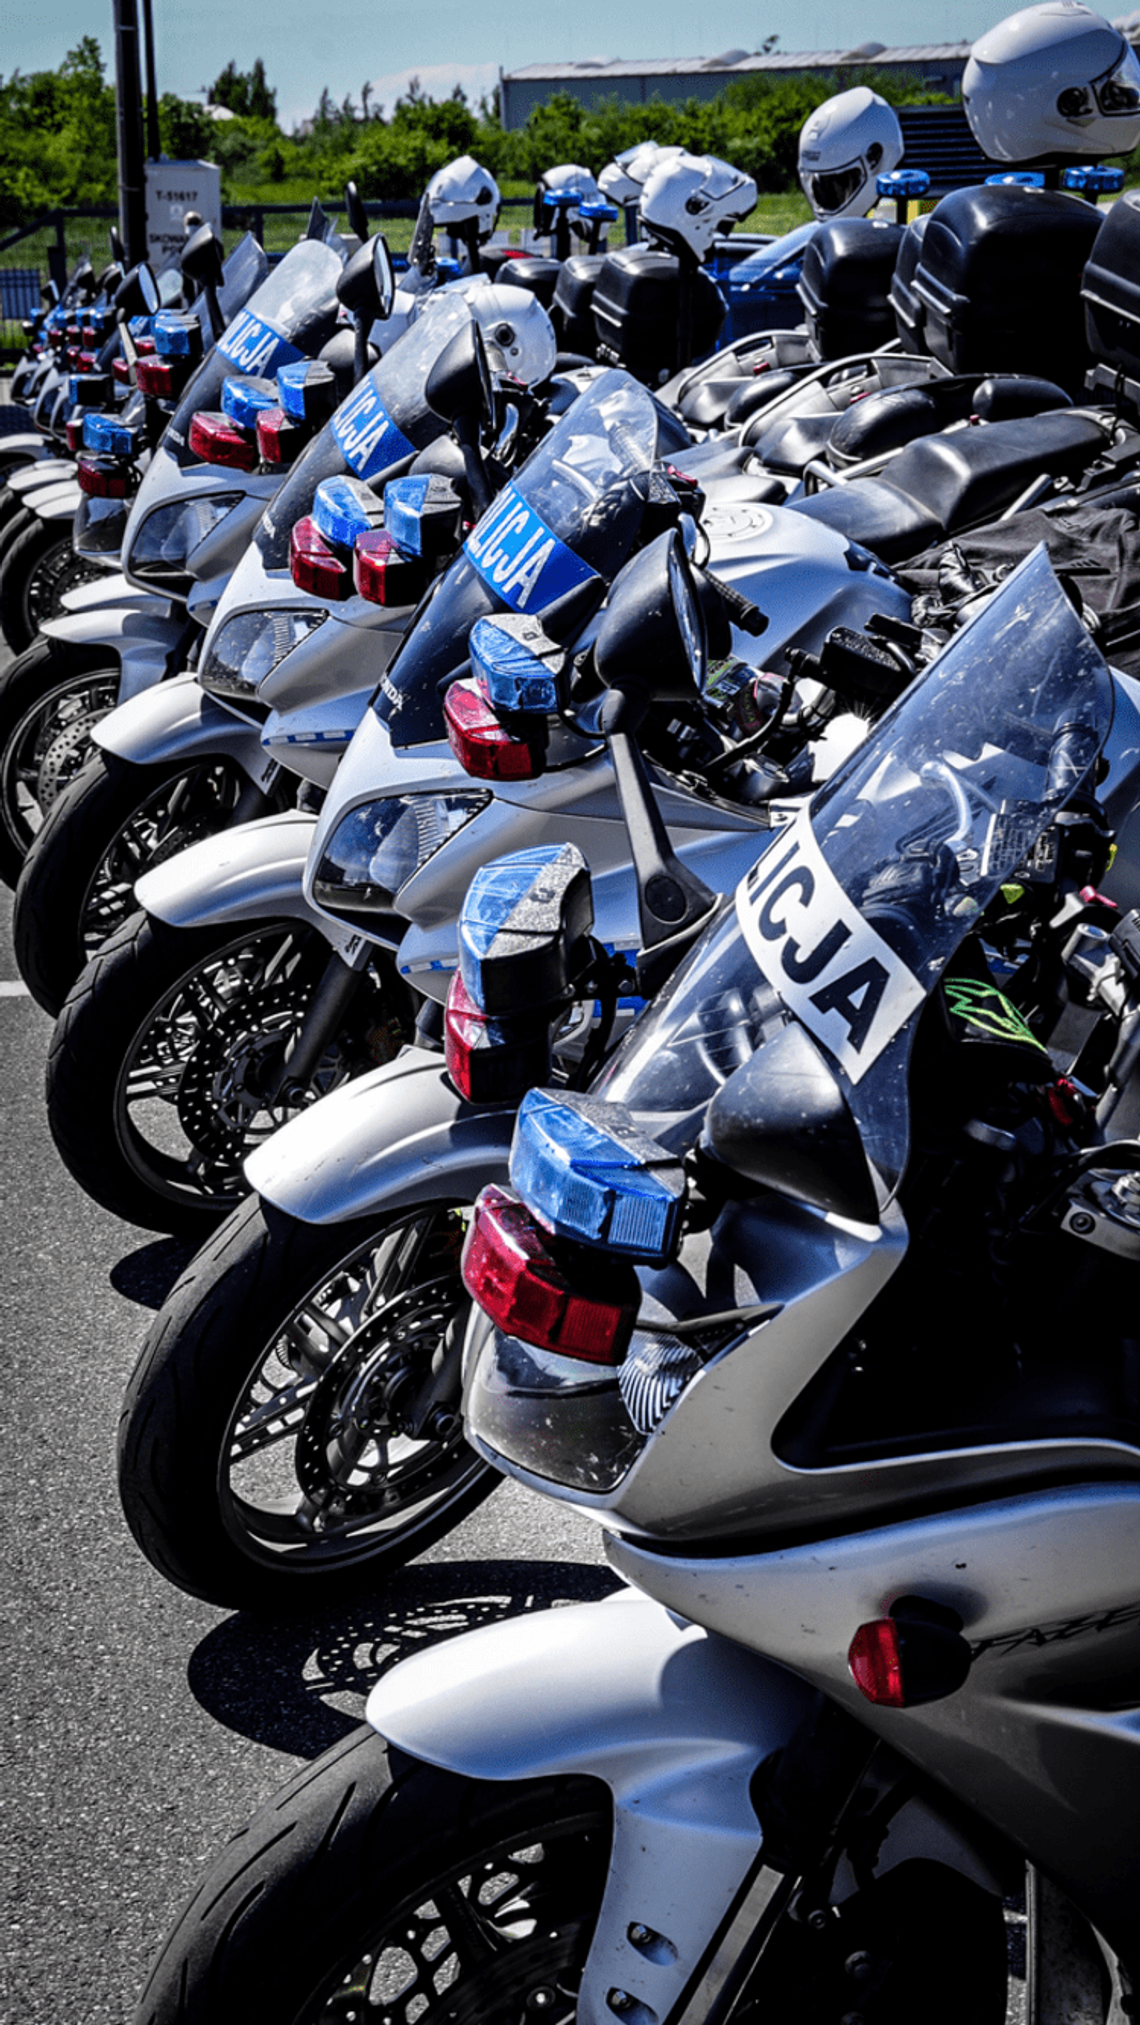 Od 6 do 8 sierpnia wzmożone kontrole motocykli! Cel: poprawa bezpieczeństwa.